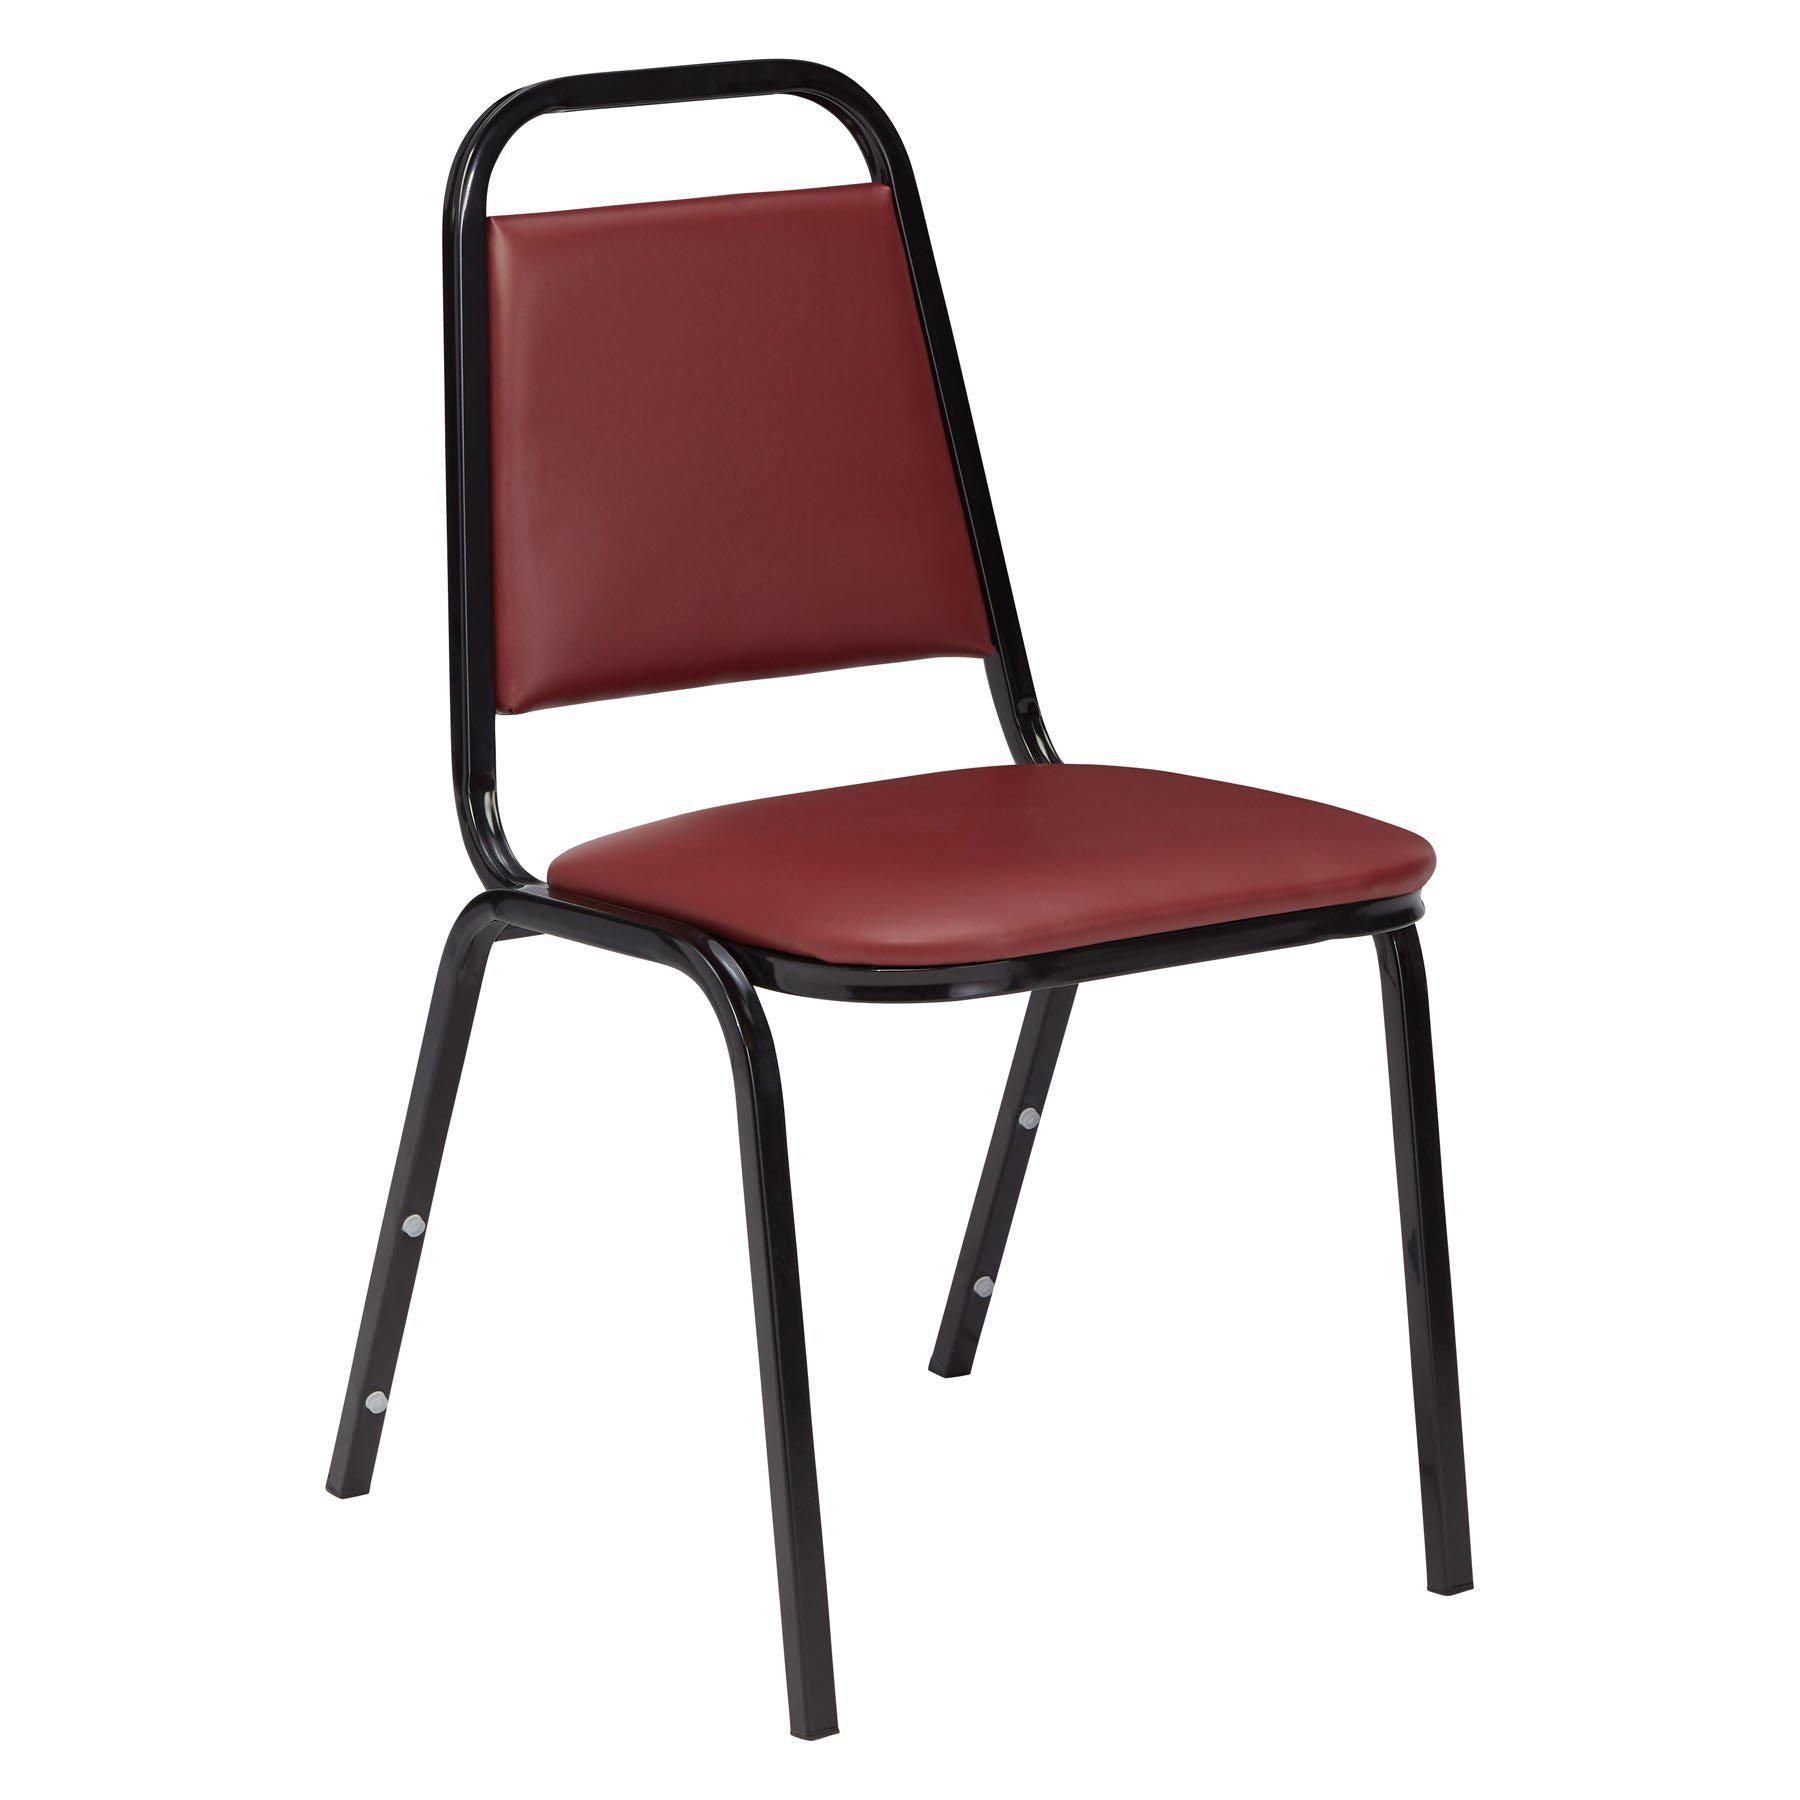 Banquet Chairs - NextGen Furniture, Inc.